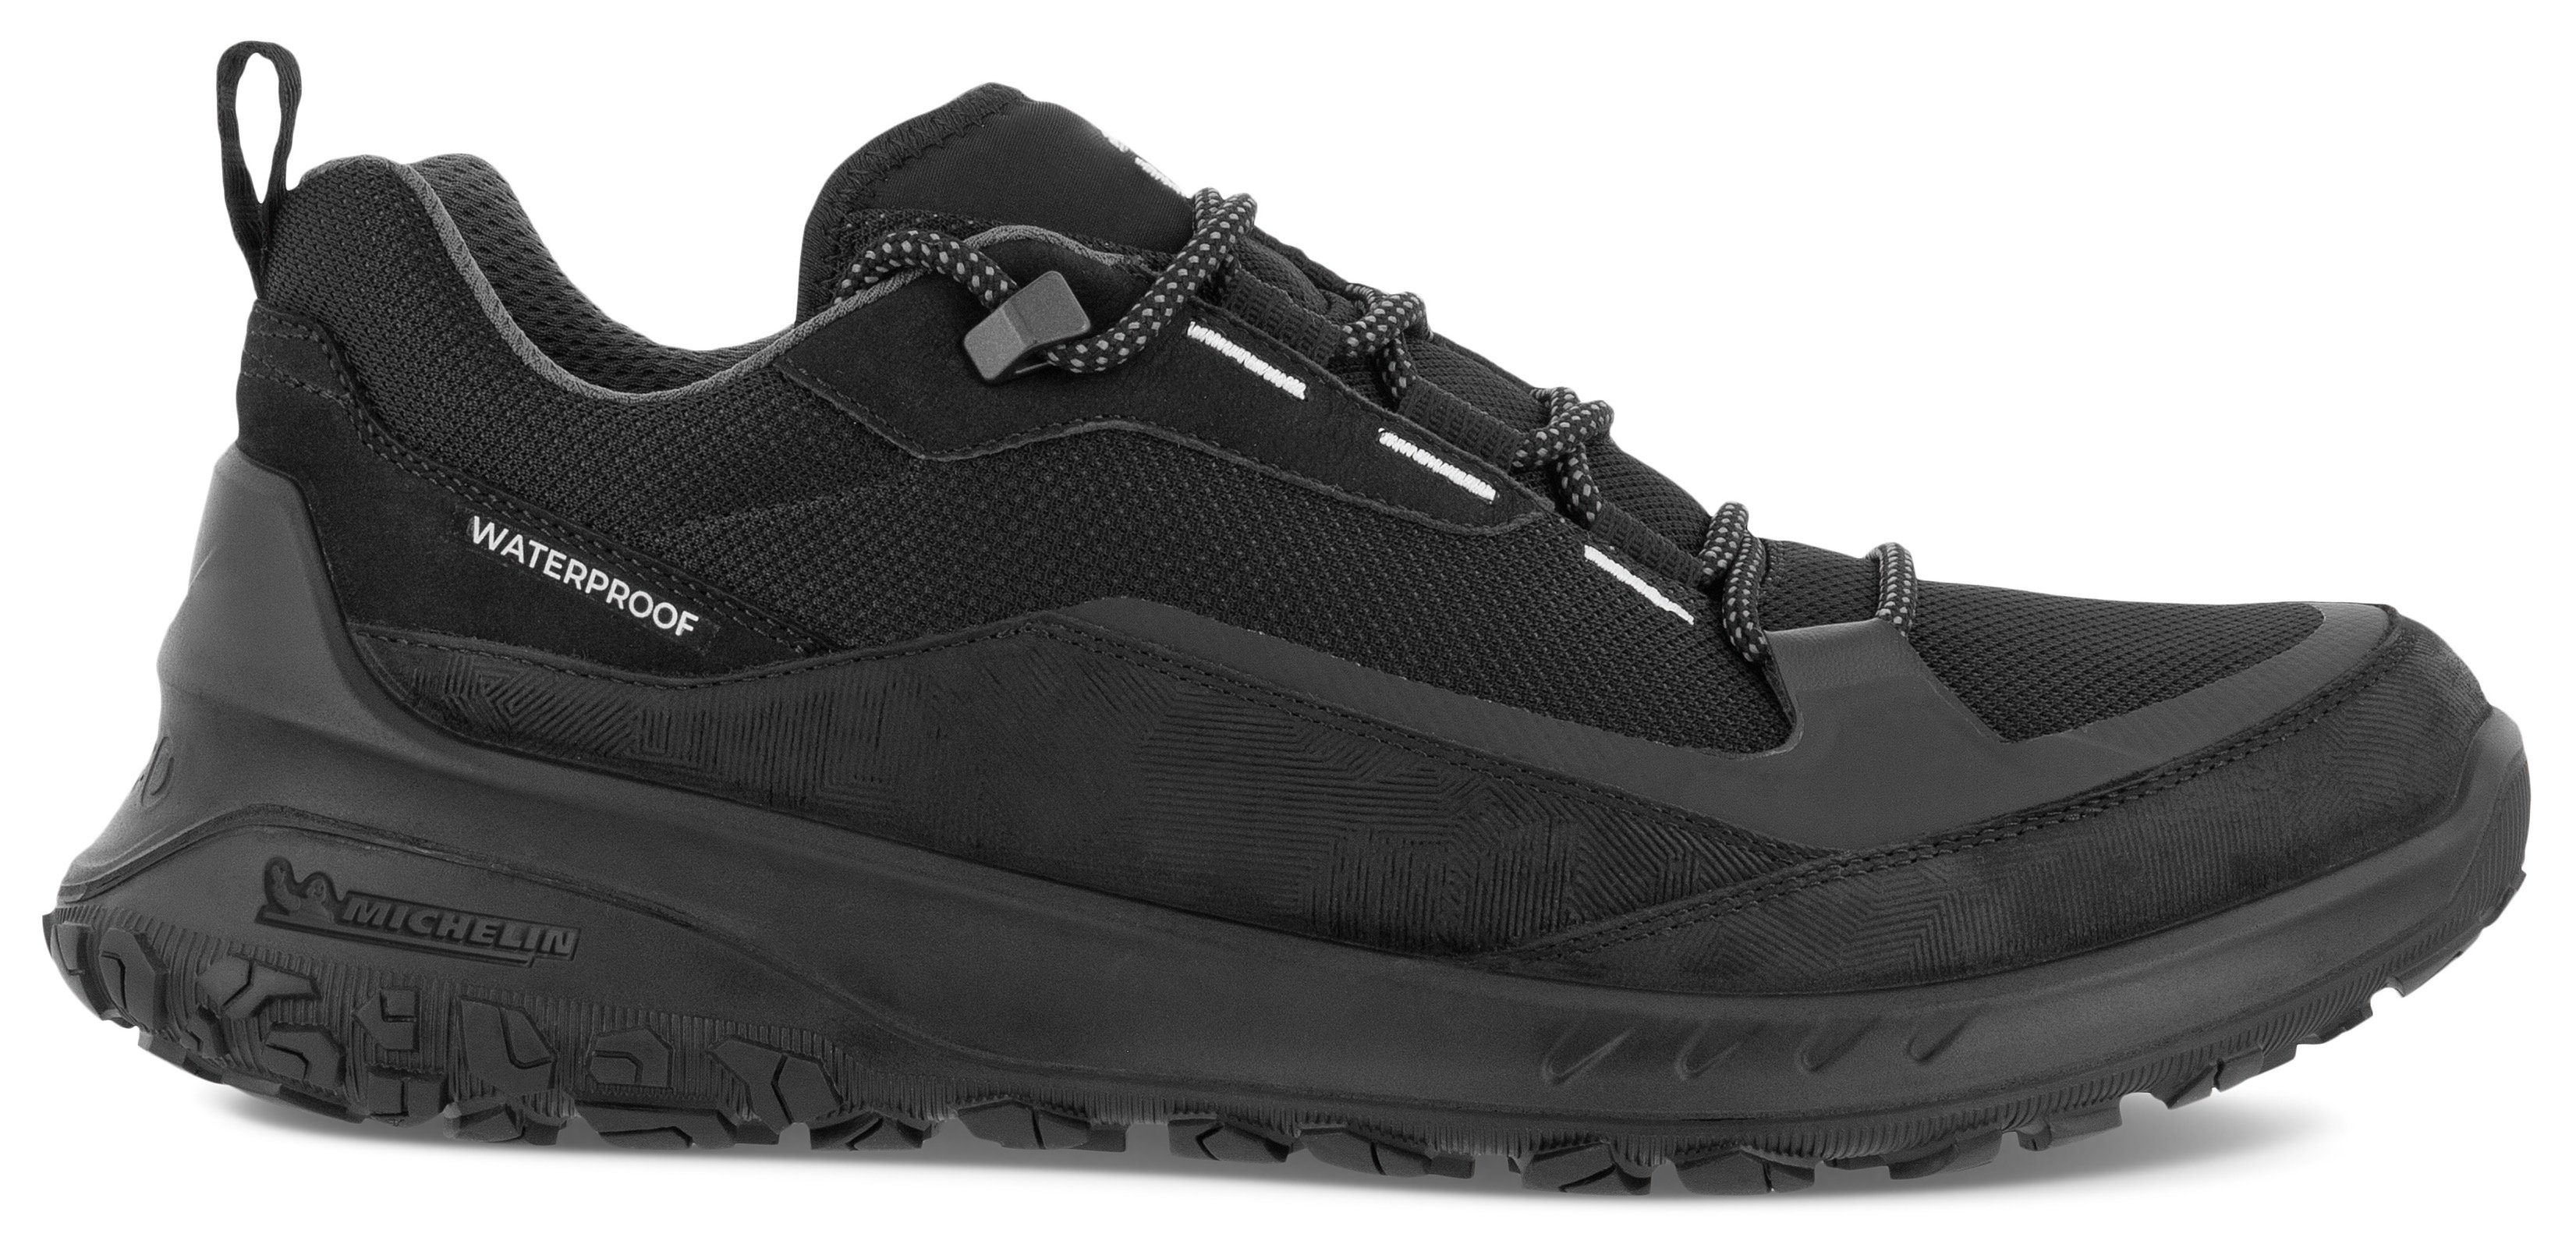 ULT-TRN mit schwarz Sneaker M Laufsohle Michelin-Technologie Ecco sportive